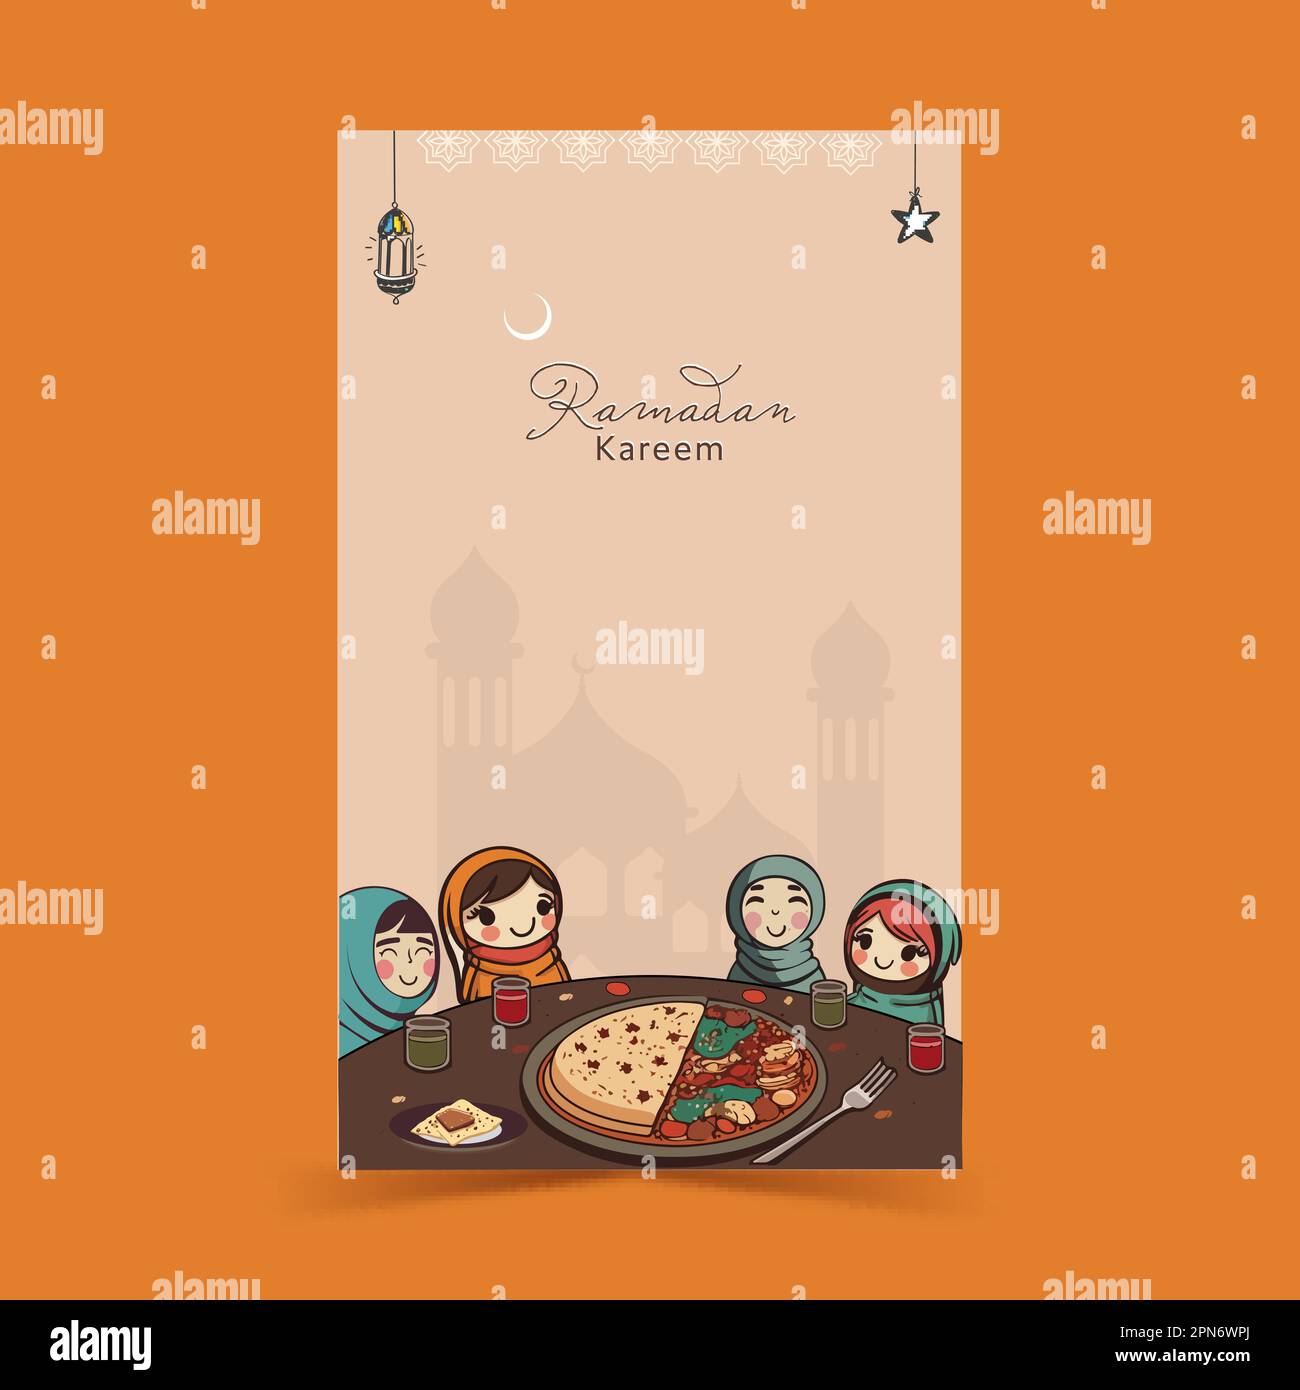 Ramadan Kareem Vertical Banner Design Mit Fröhlichen Muslimischen Weiblichen Kindern, Die Köstliche Mahlzeiten Am Esstisch Genießen. Stock Vektor